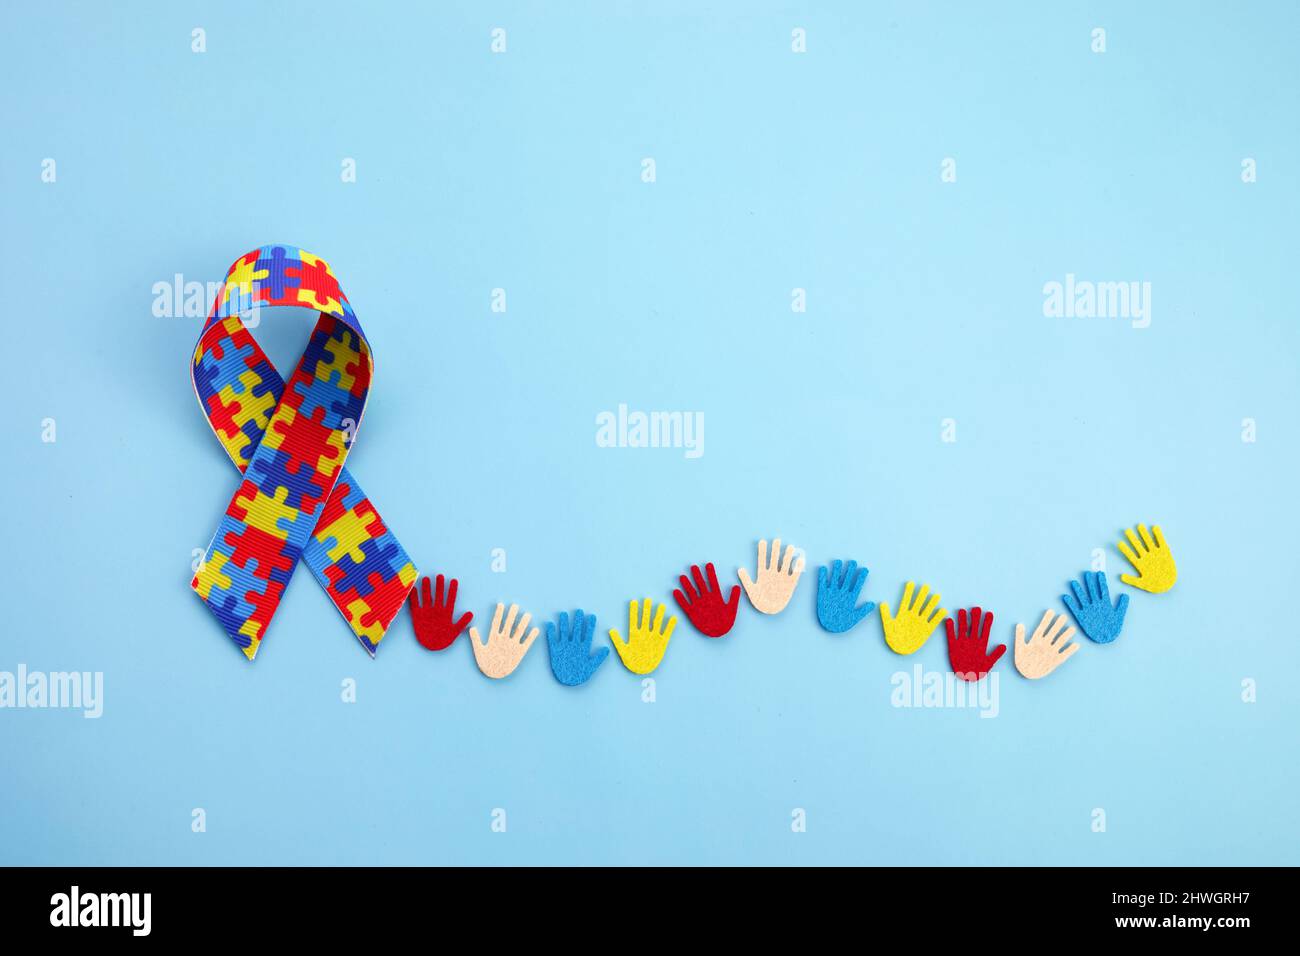 Autismus-Bewusstsein-Konzept mit bunten Händen auf blauem Hintergrund. Draufsicht Stockfoto